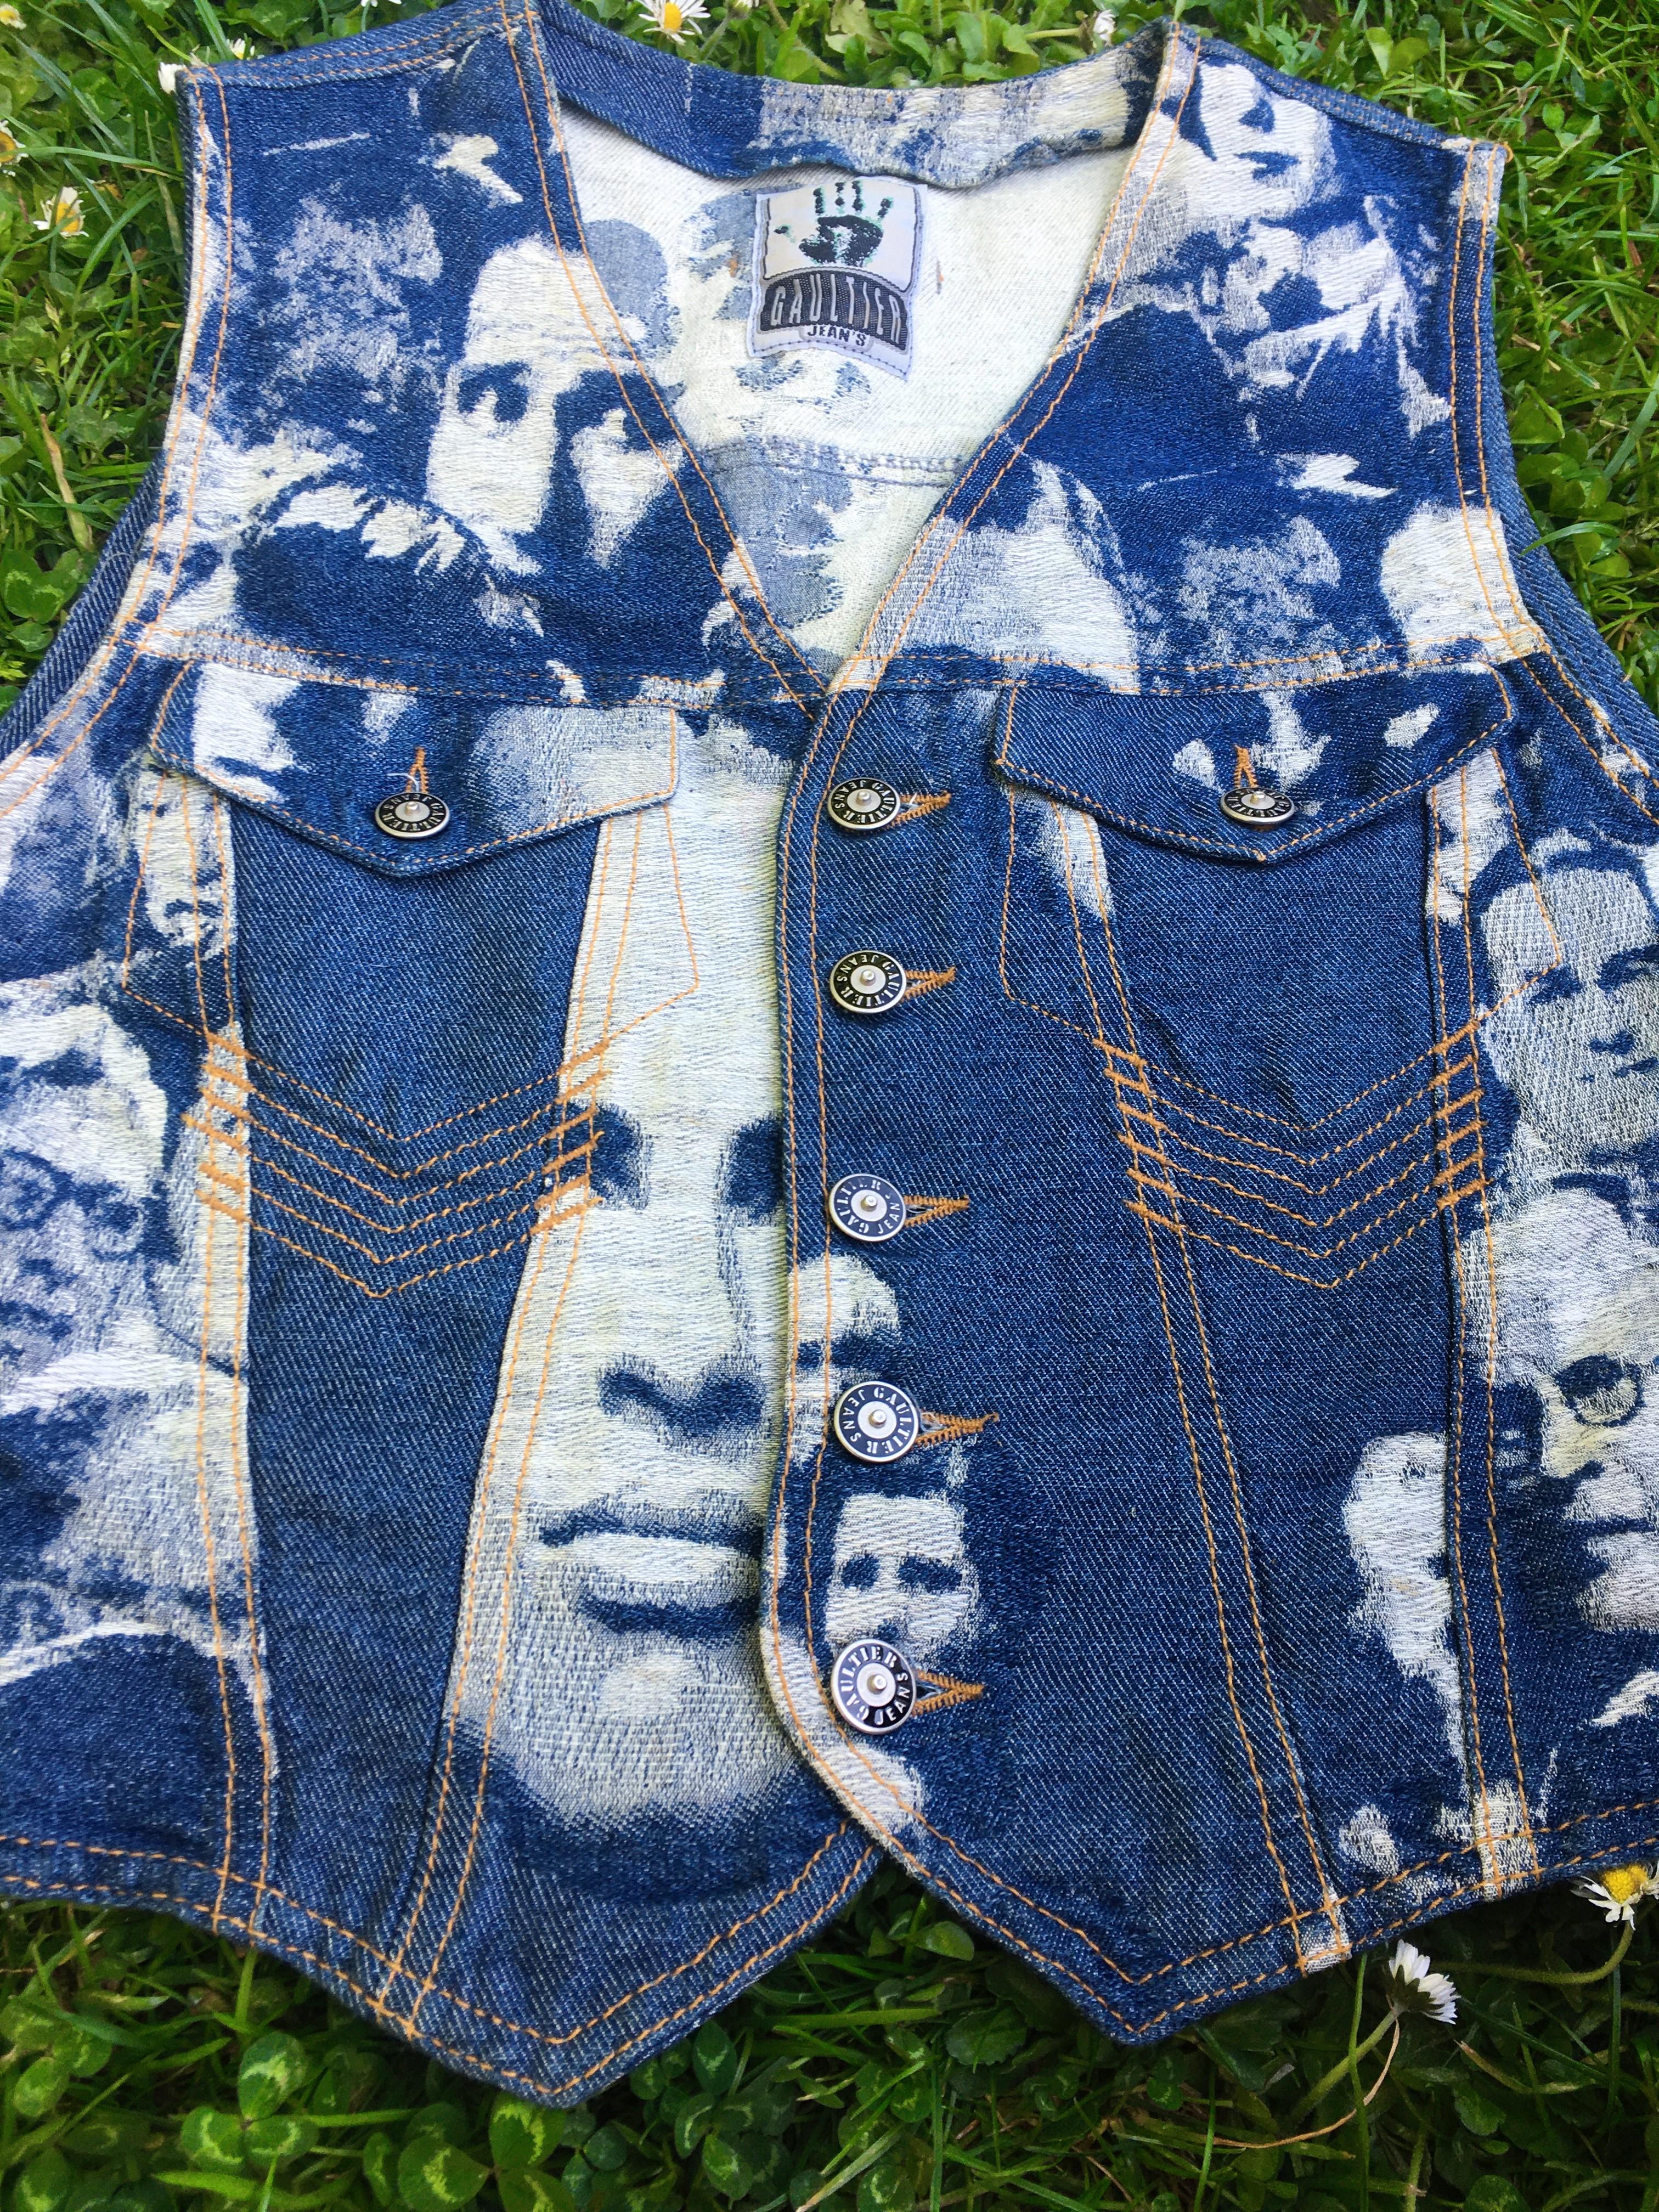 Blue Jean Paul Gaultier Jeans Vintage Face Jacquard Denim Punk 1992 Fight Racism Vest